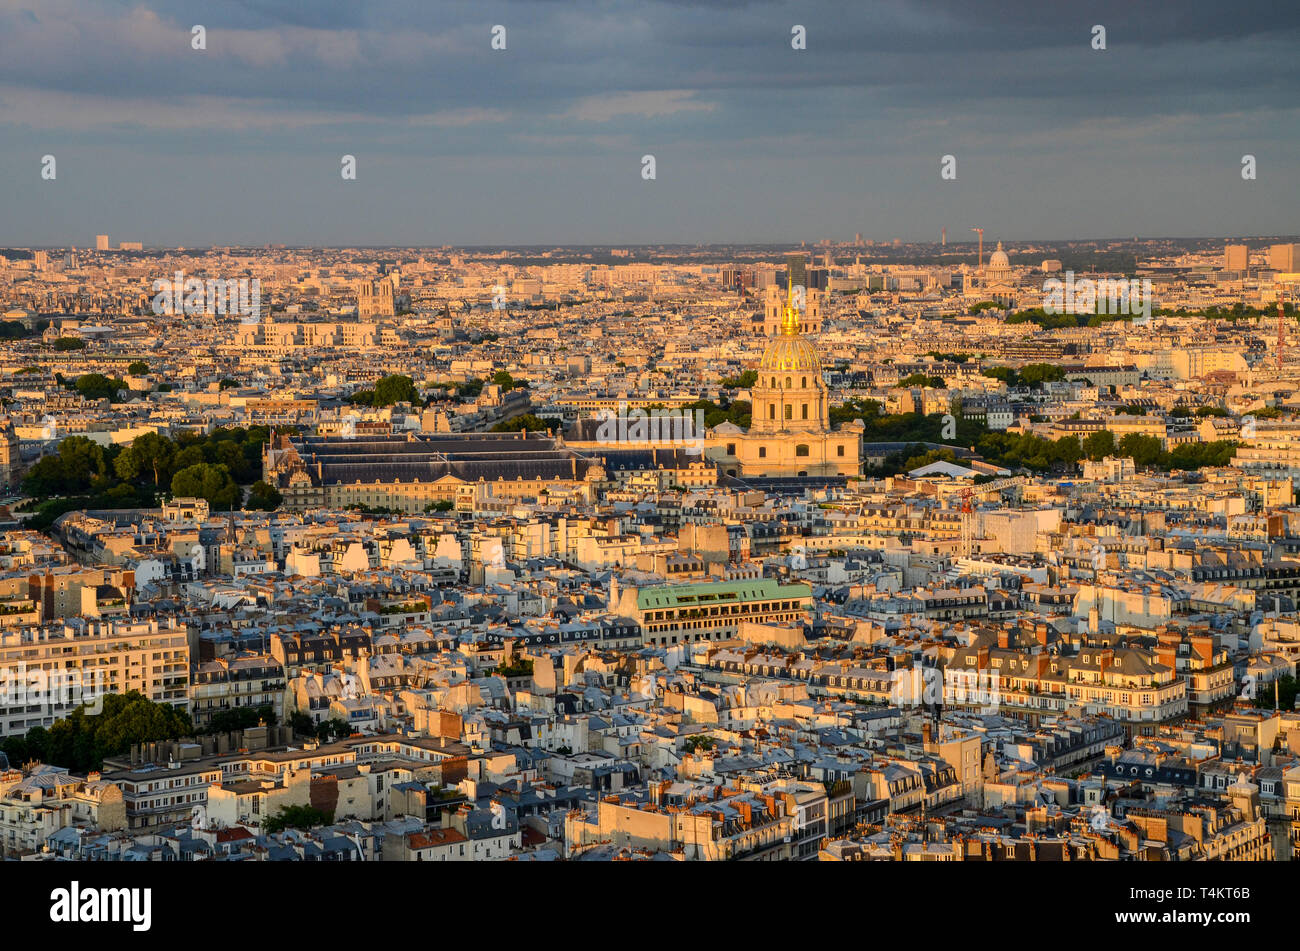 Paris, France skyline at dusk. Notre Dame, The Army Museum Musée de l'Armée, domes, historic buildings. Gold leaf, gilded dome. 7th arrondissement Stock Photo